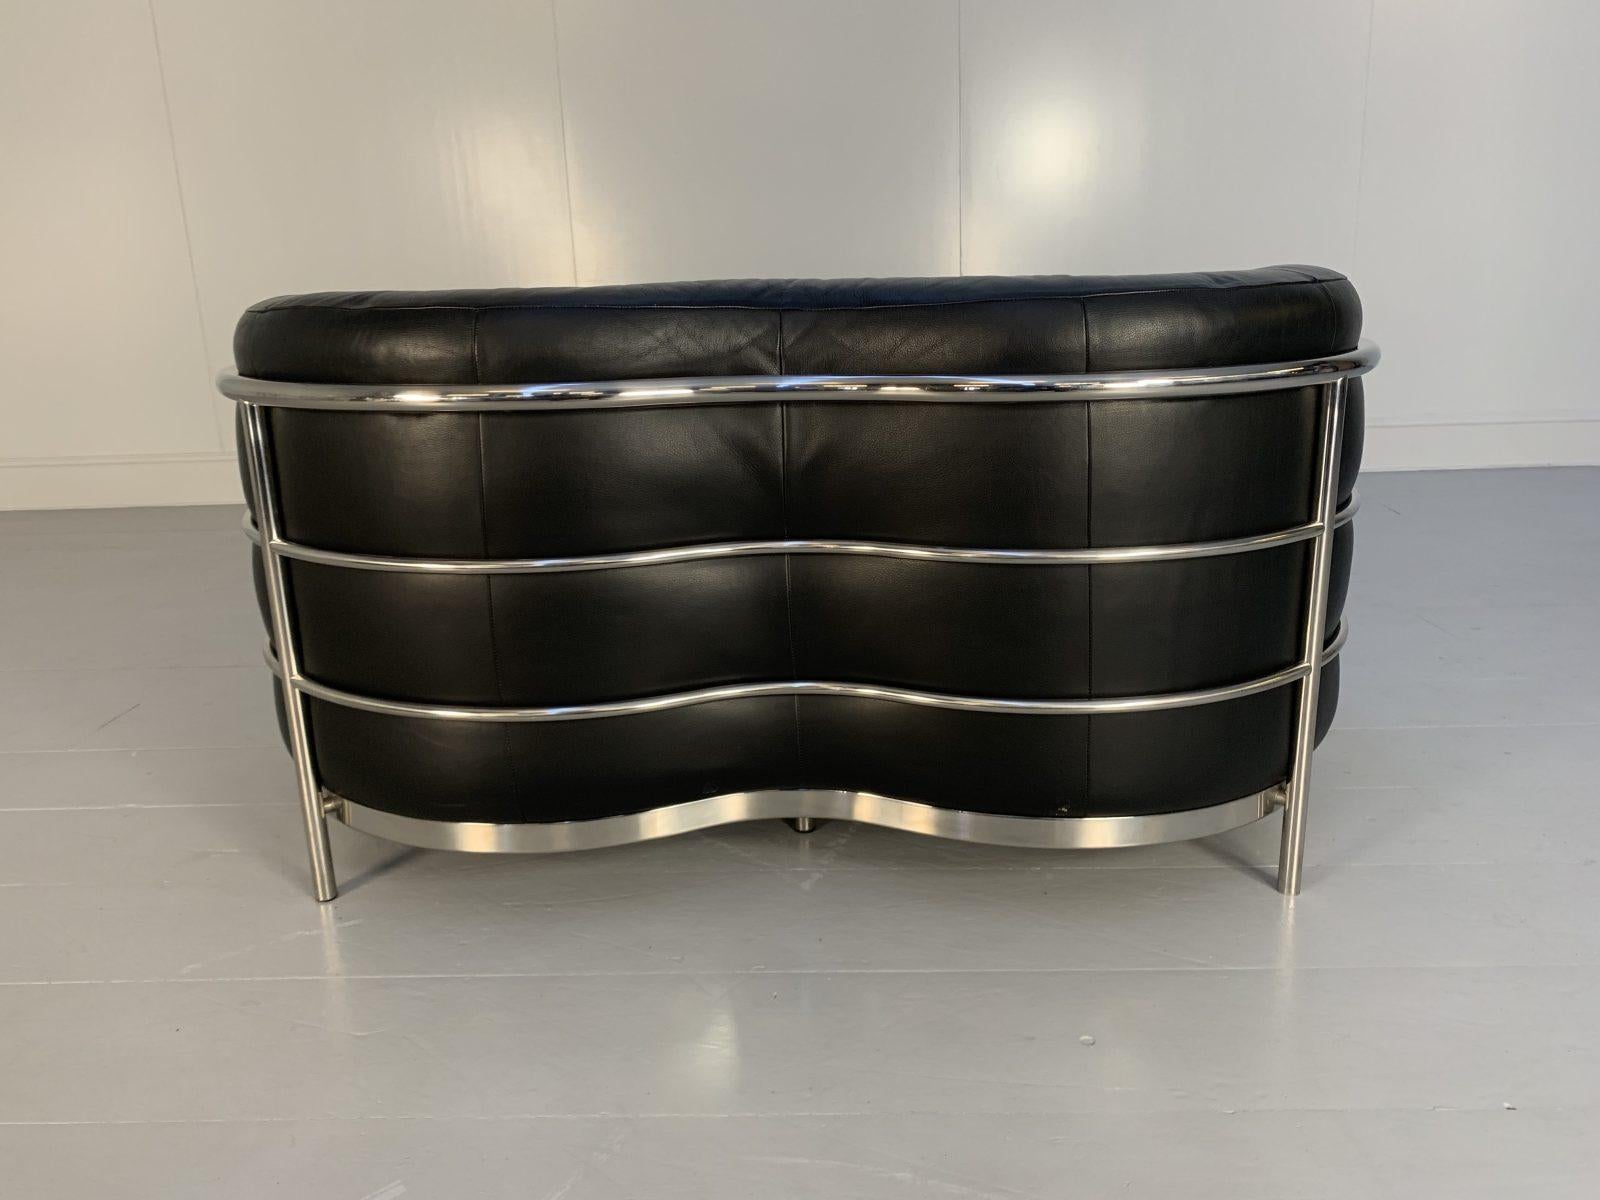 Zanotta “Onda” Sofa – 2-Seat – in Black “Scozia” Leather and Chrome For Sale 4